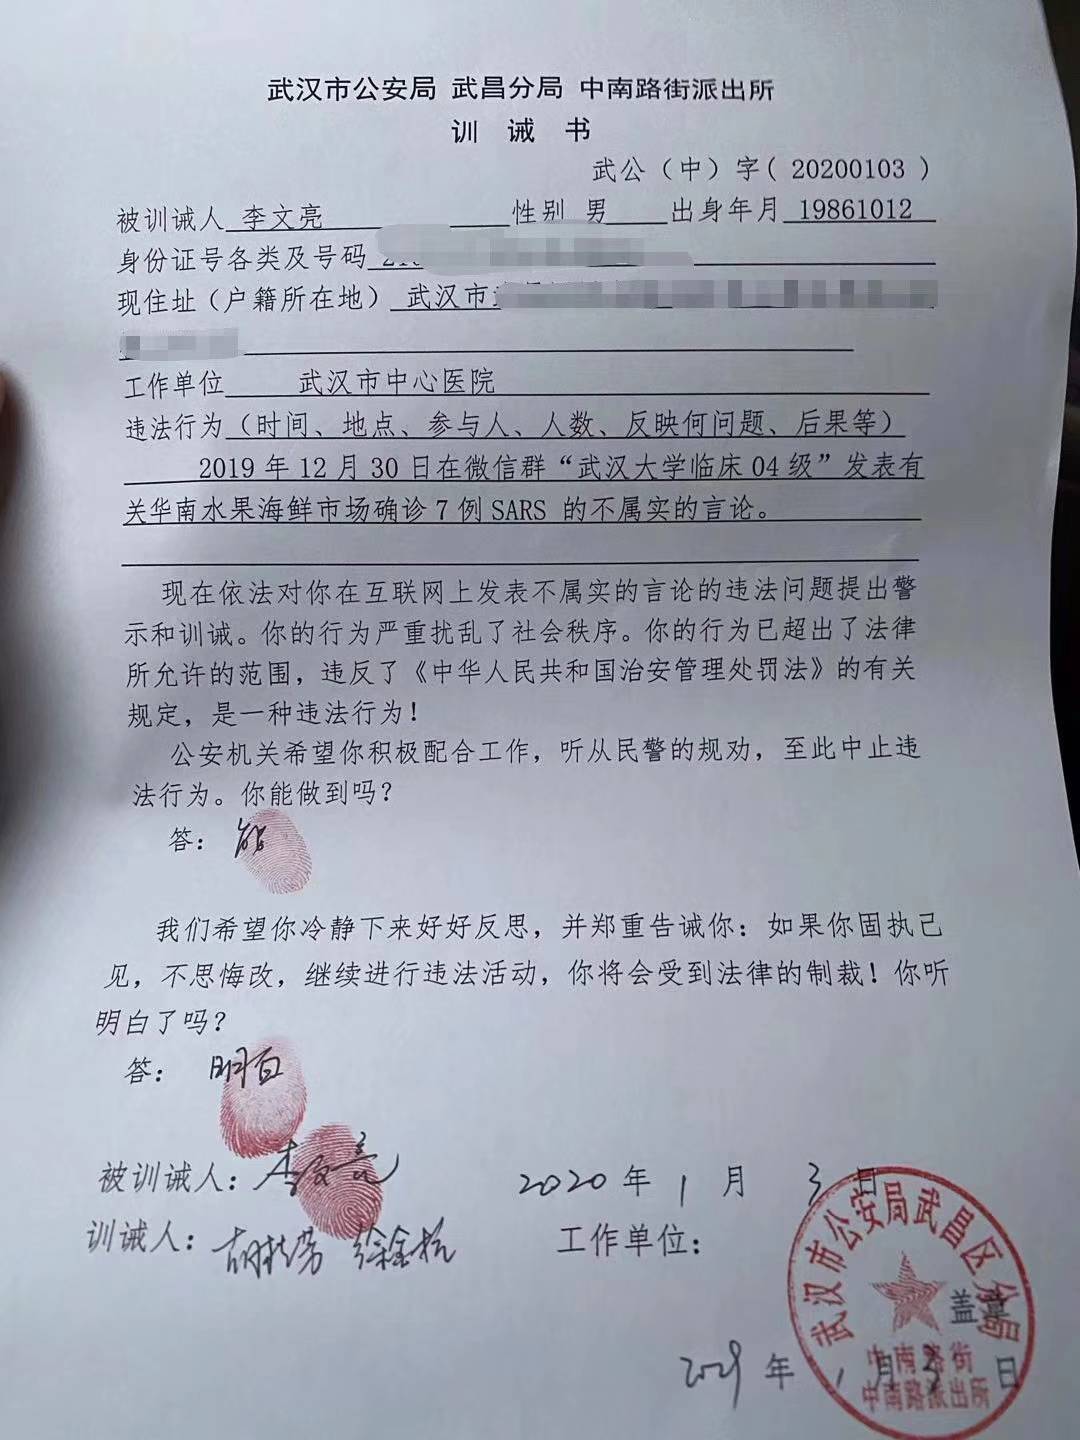 武漢の警察が李医師にサインをさせた訓誡書